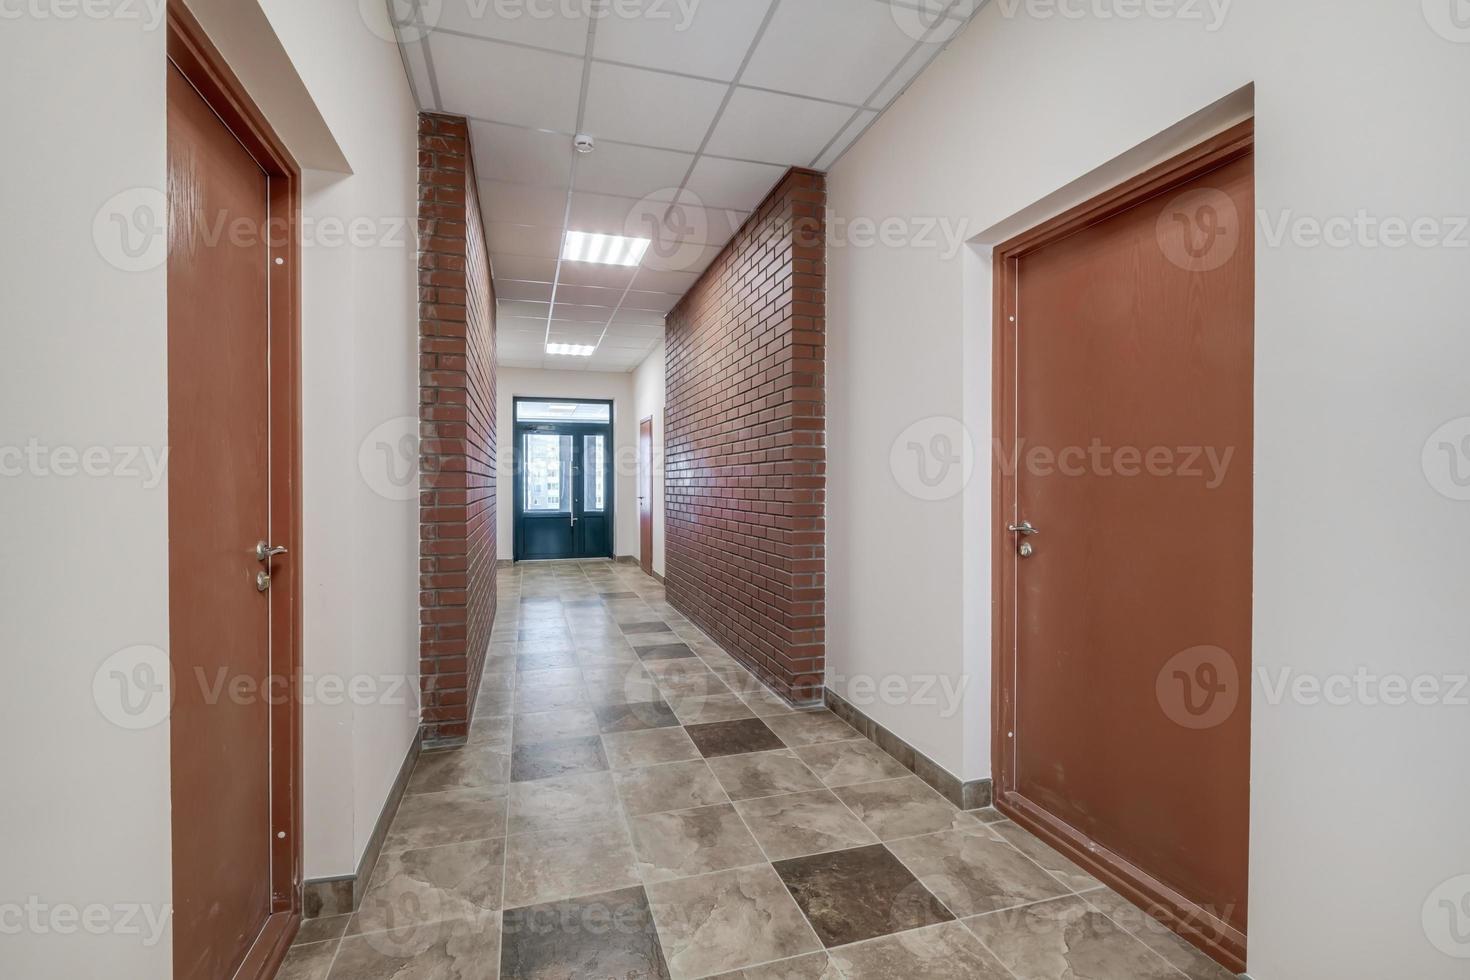 vide longue couloir avec rouge brique des murs dans intérieur de moderne appartements, Bureau ou clinique. photo